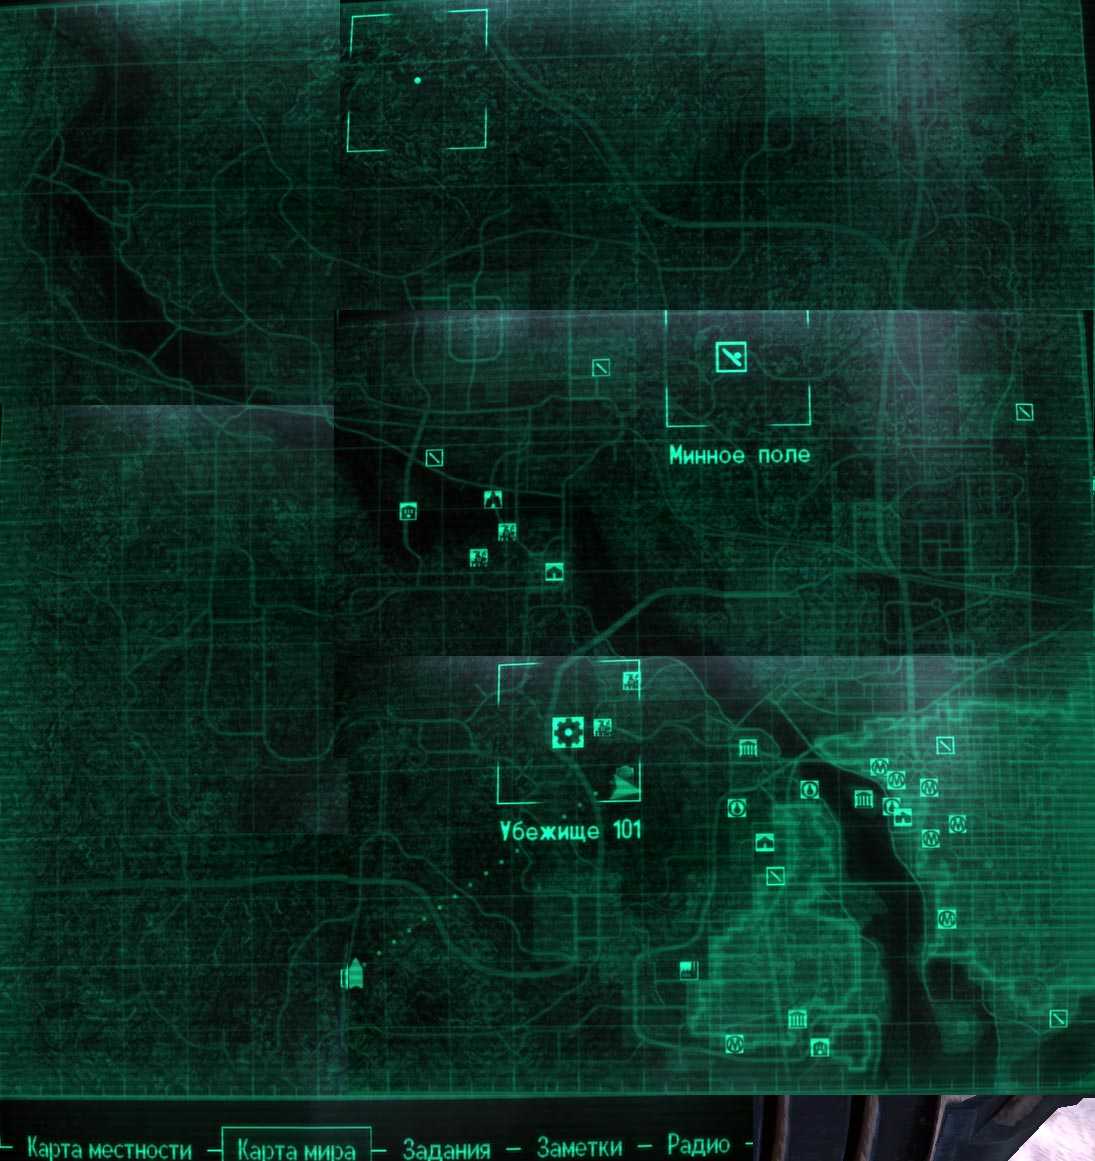 как найти убежище 75 в fallout 4 на карте фото 96